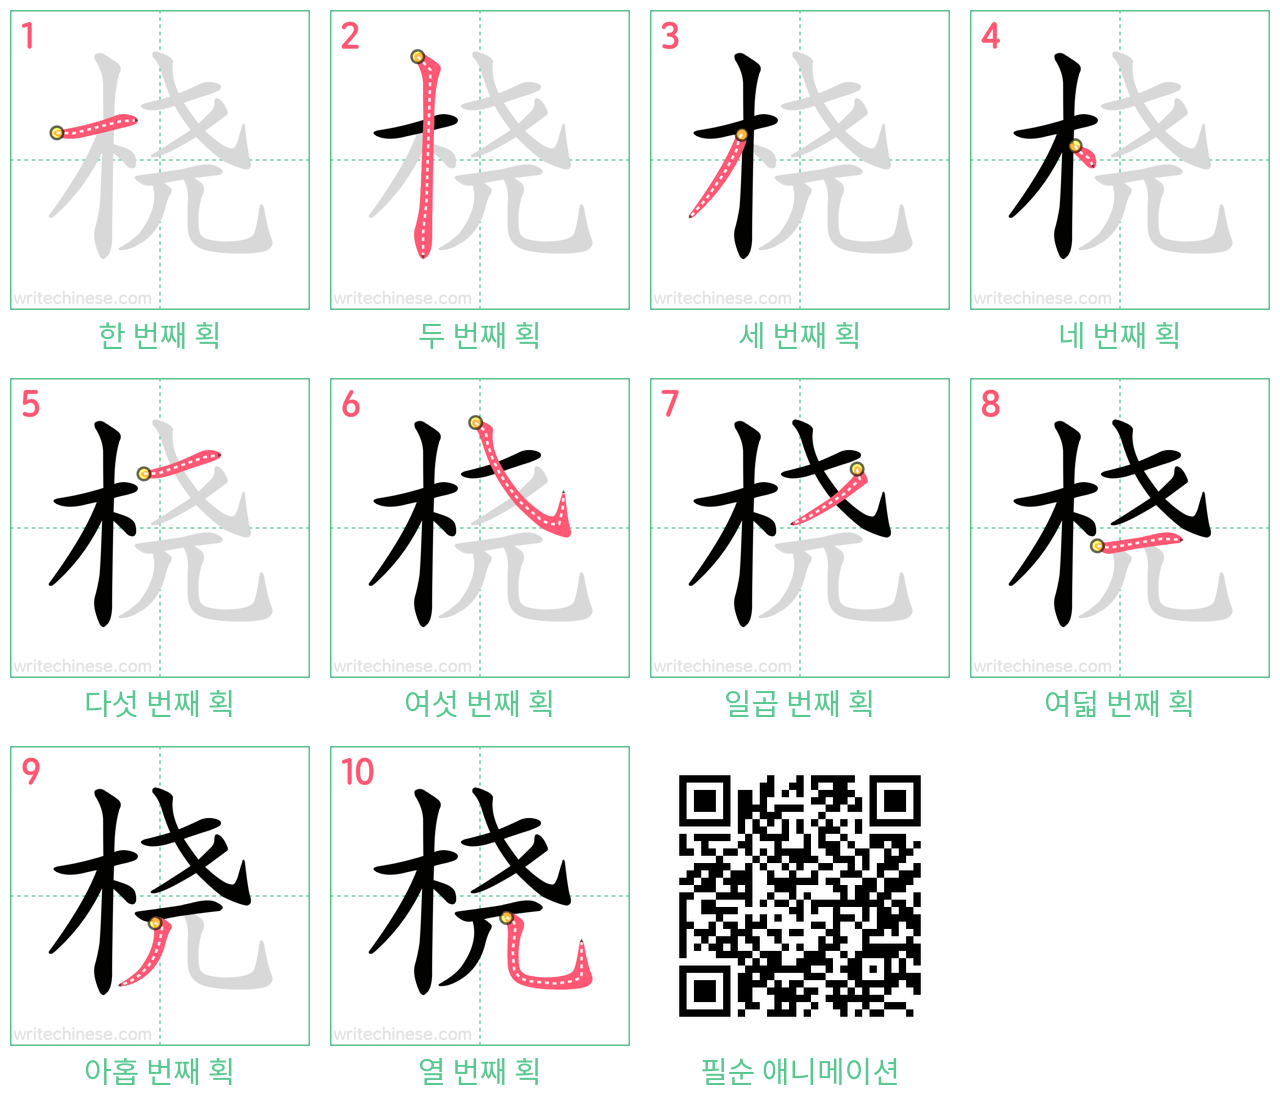 桡 step-by-step stroke order diagrams